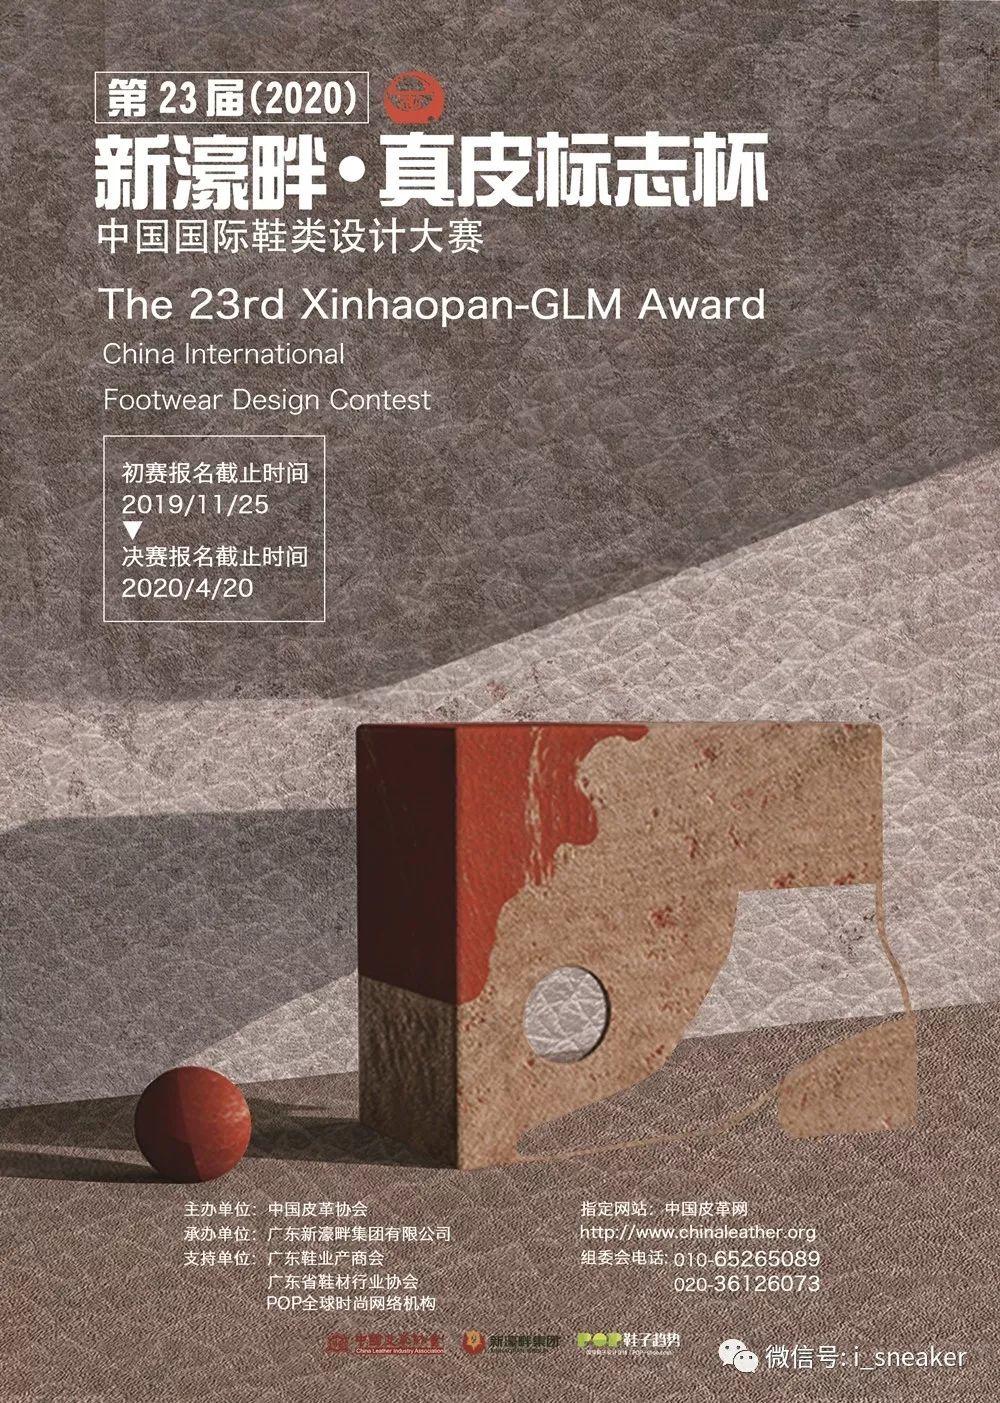 赛事丨关于举办第二十三届（2020）“新濠畔·真皮标志杯”中国国际鞋类设计大赛的通知